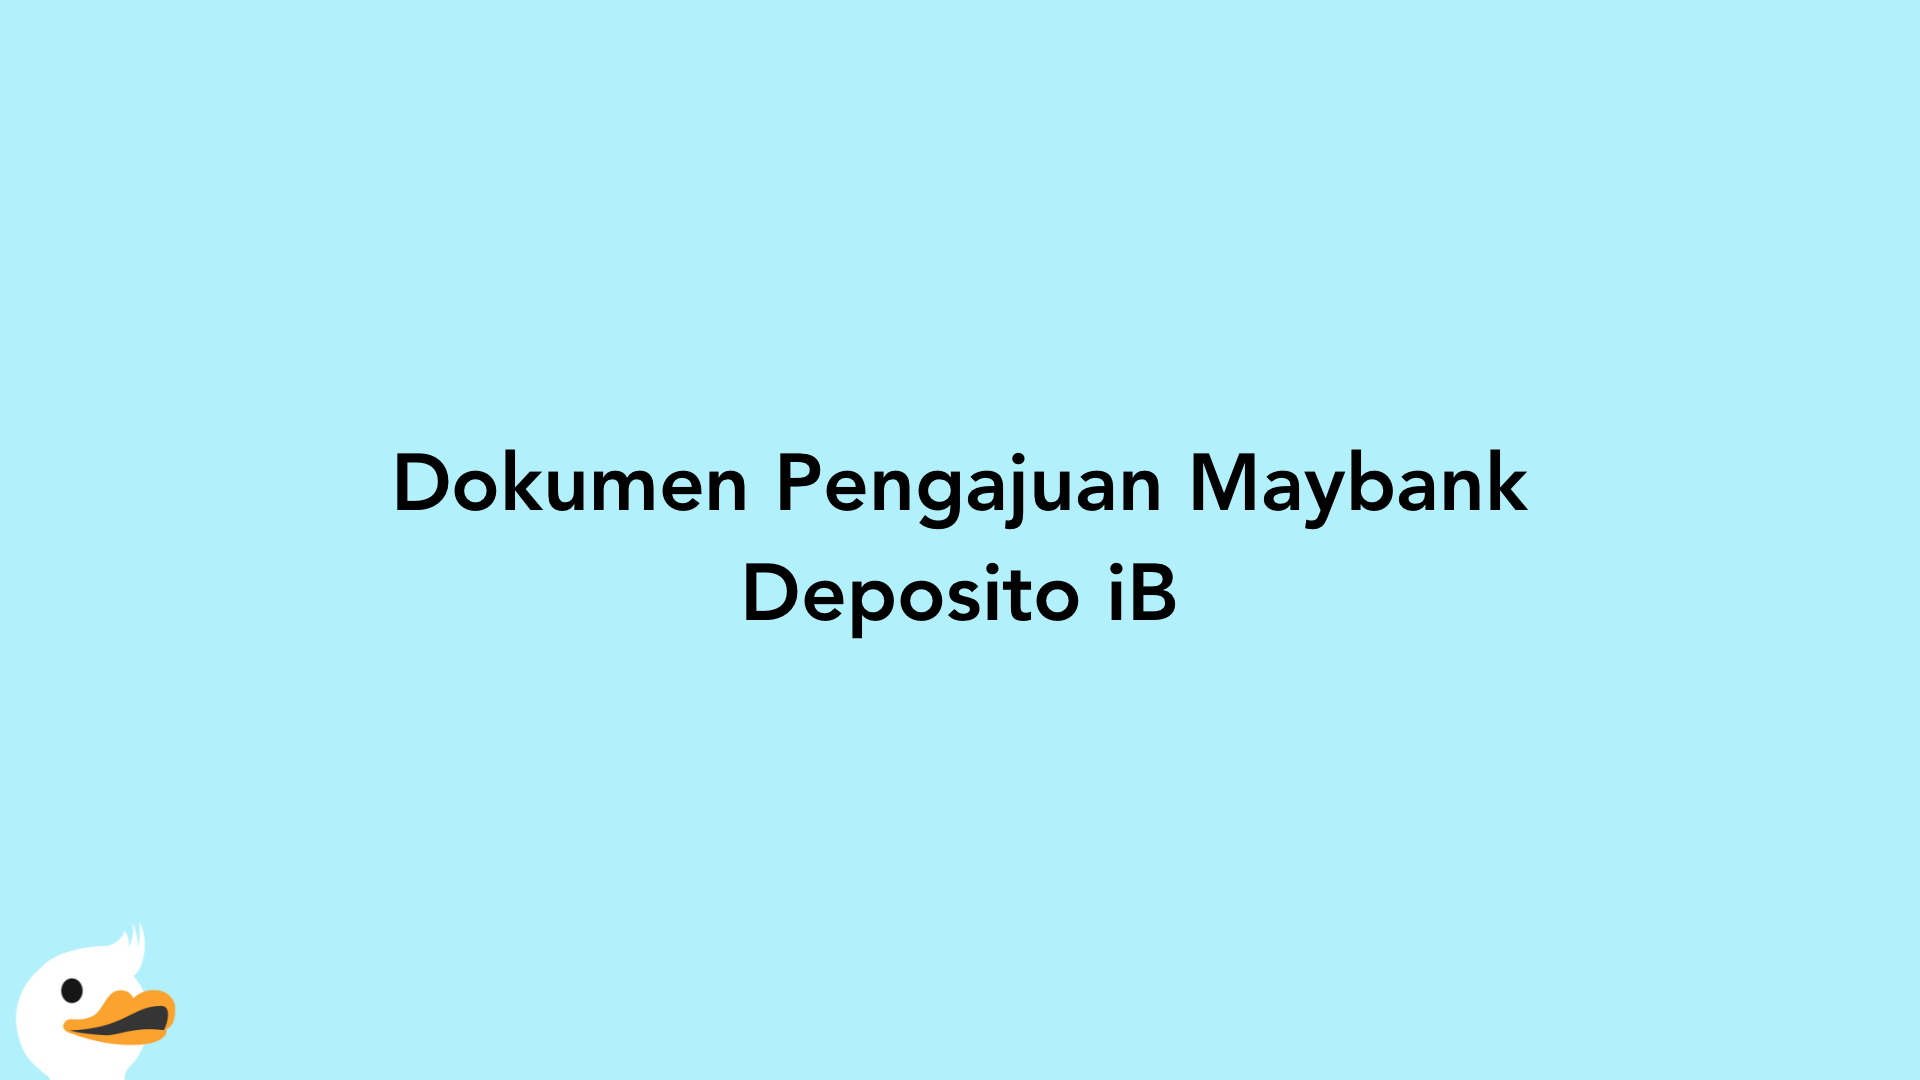 Dokumen Pengajuan Maybank Deposito iB